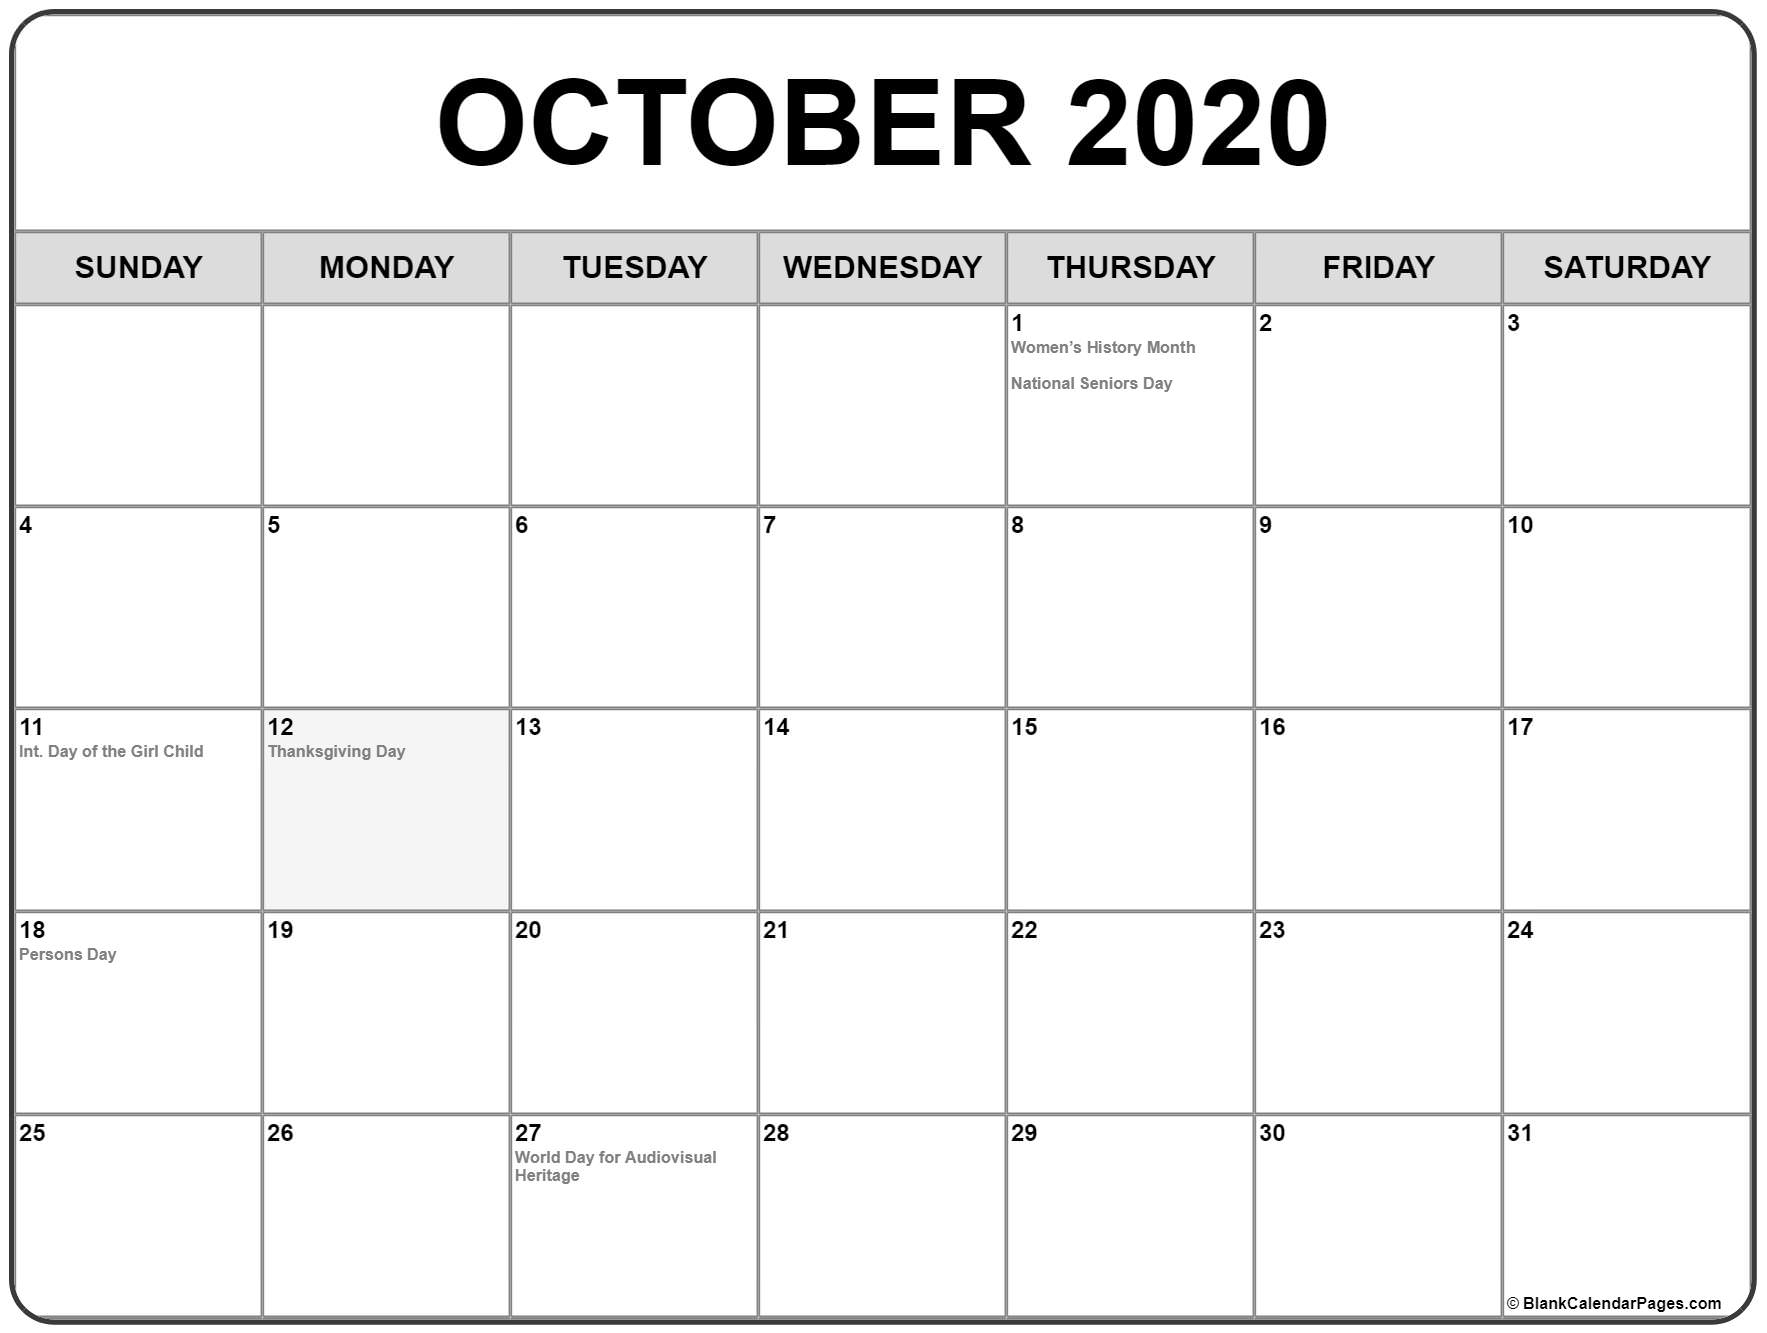 Calendars Michel Zbinden 2020 | Calendar For Planning within Calendars Michel Zbinden